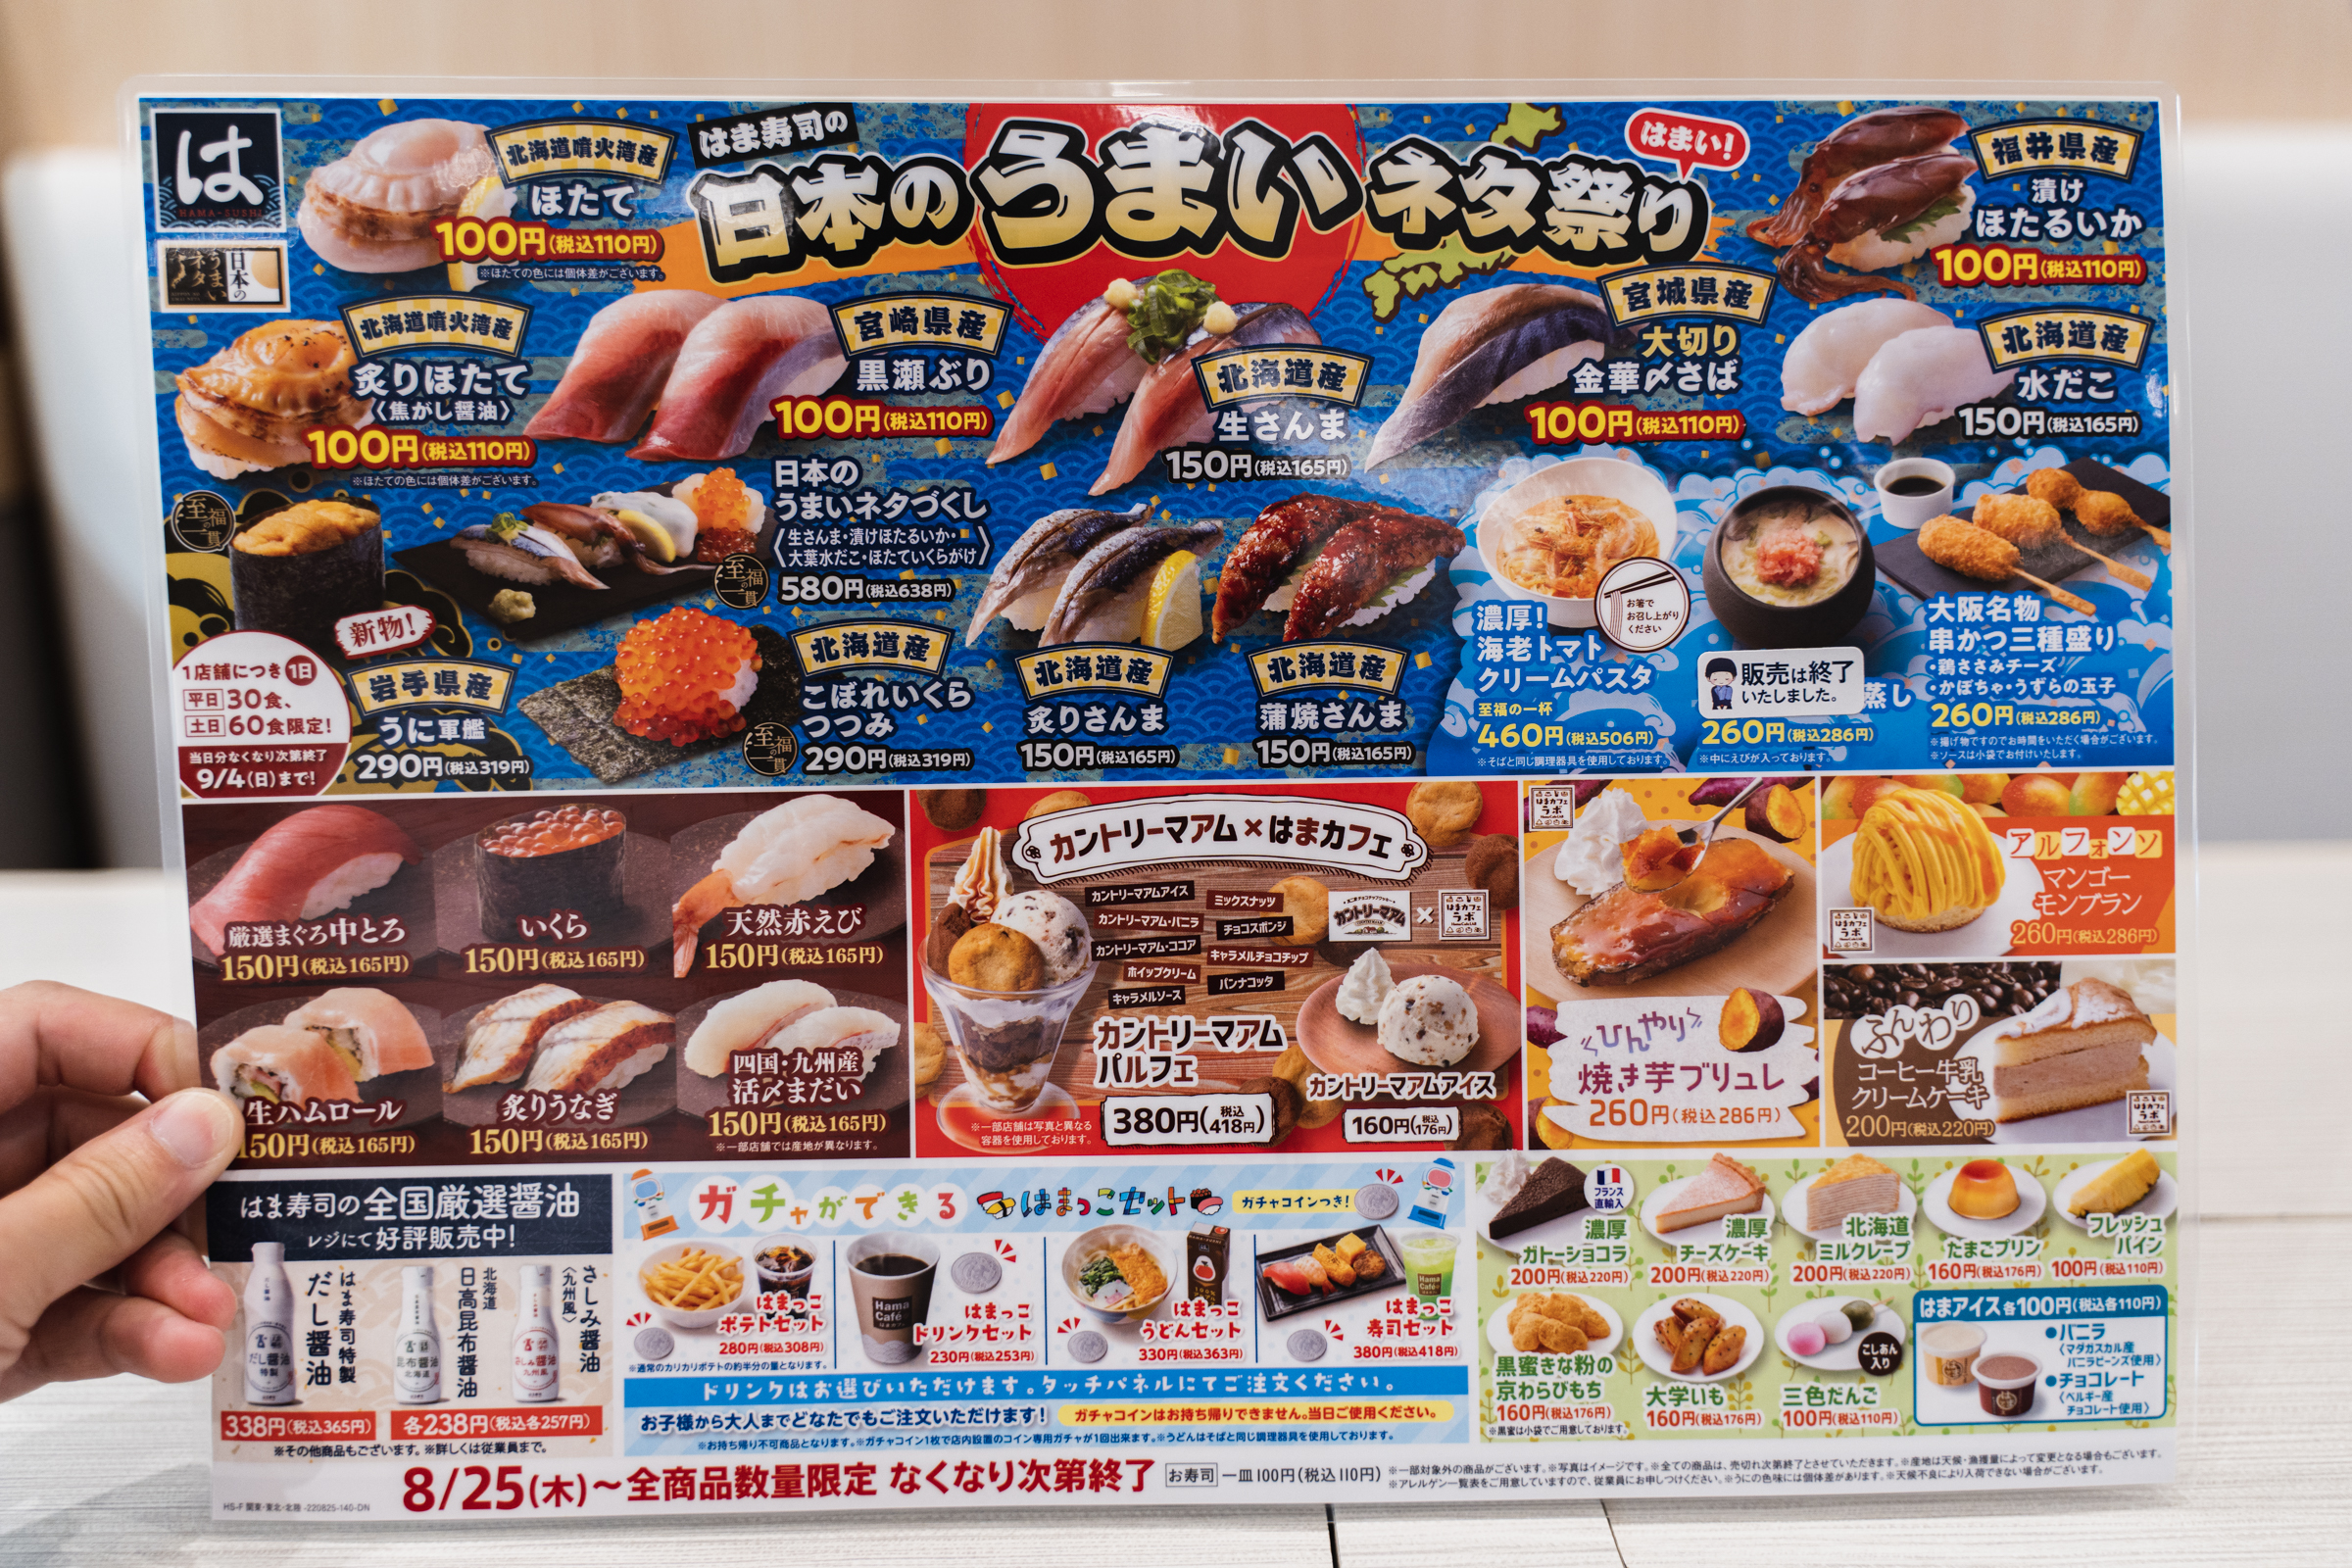 おっ はま寿司が 日本のうまいネタ祭り で面白い寿司を出してるぞ 脅威の水産テクノロジーの産物 ロケットニュース24